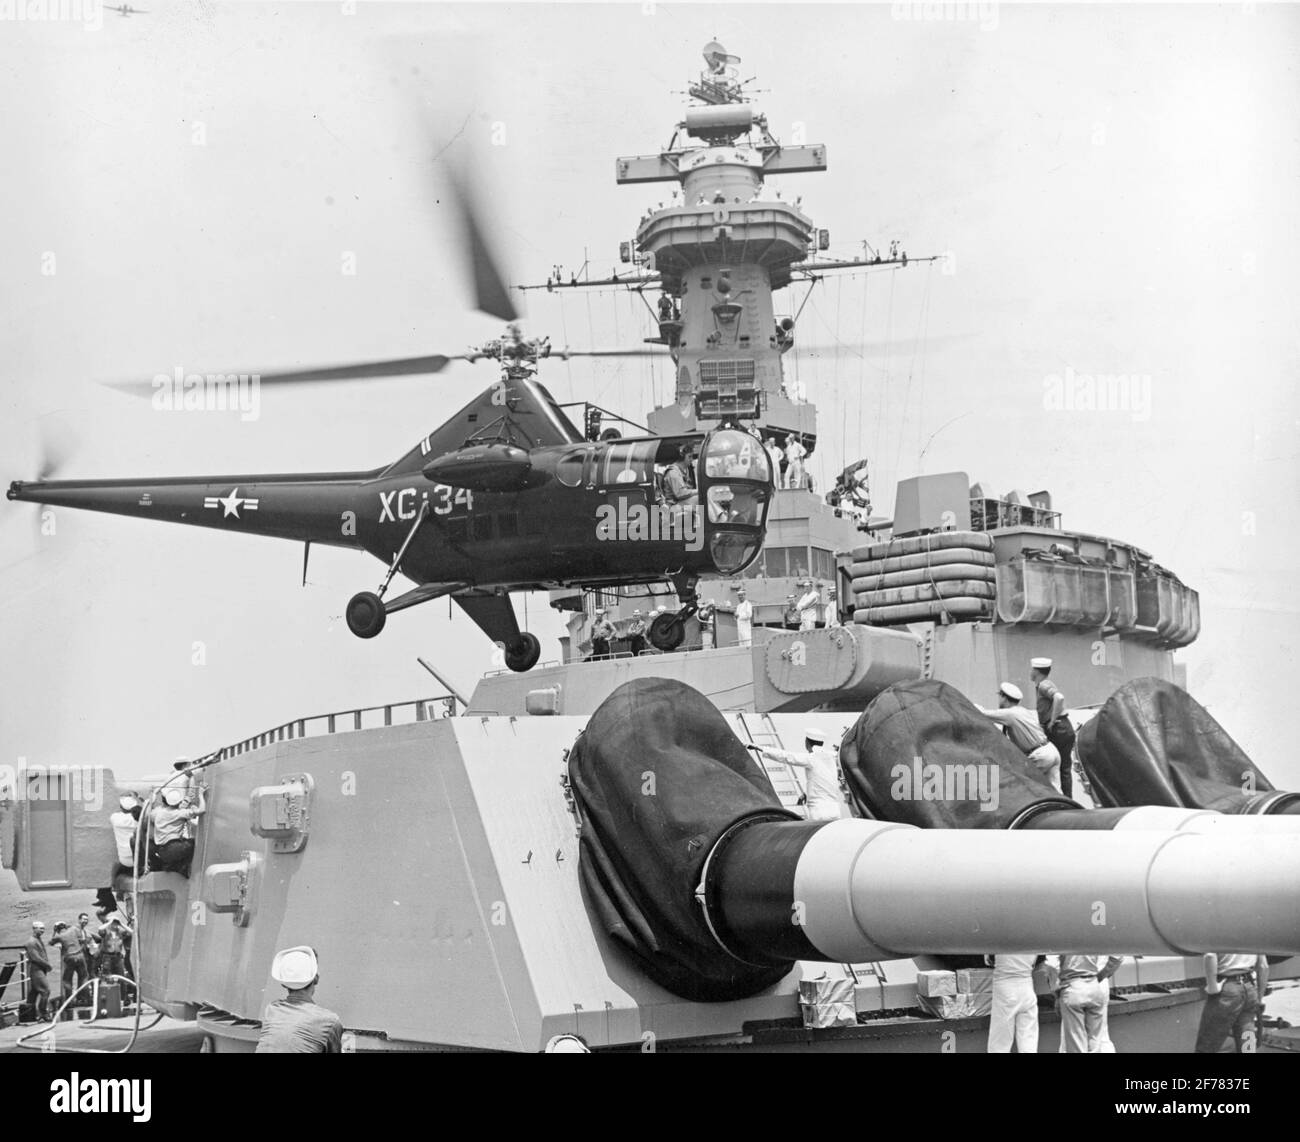 USS Missouri (BB-63) Sikorsky HO3S-1 Hubschrauber Landung auf dem vorderen 16-Zoll-Geschützturm, während der Midshipmen-Kreuzfahrt 1948. Wachposten, Schiffszeitungen und Personal wurden per Hubschrauber ausgetauscht, während das Kreuzfahrtgeschwader der Midshipmen auf See war. Die meisten Umschreibungen wurden durch schwebende Pick-up gemacht. Der Vorwärtsturm wurde als Landeplattform verwendet, da die Wasserflugzeugabstürme auf der Fantane des Schiffes den Betrieb von Hubschraubern dort verhinderten. Das Foto wurde am 13. September 1948 eingereicht. Offizielles US-Navy-Foto Stockfoto